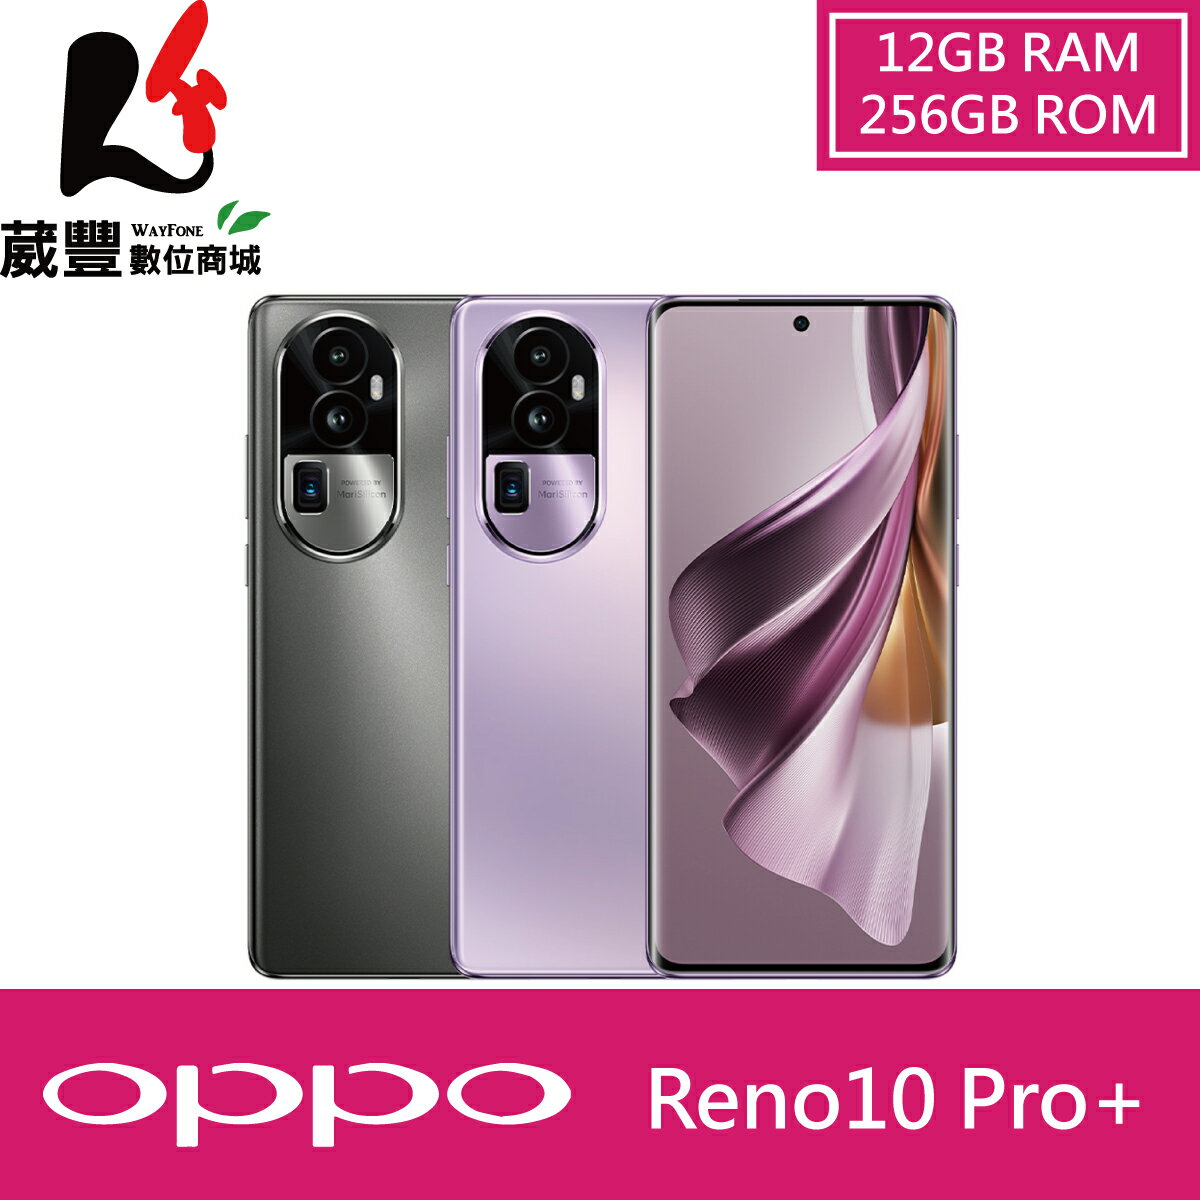 【贈原廠保護殼+立架原子筆】OPPO Reno10 Pro+ (12G/256G) 智慧型手機【葳豐數位商城】